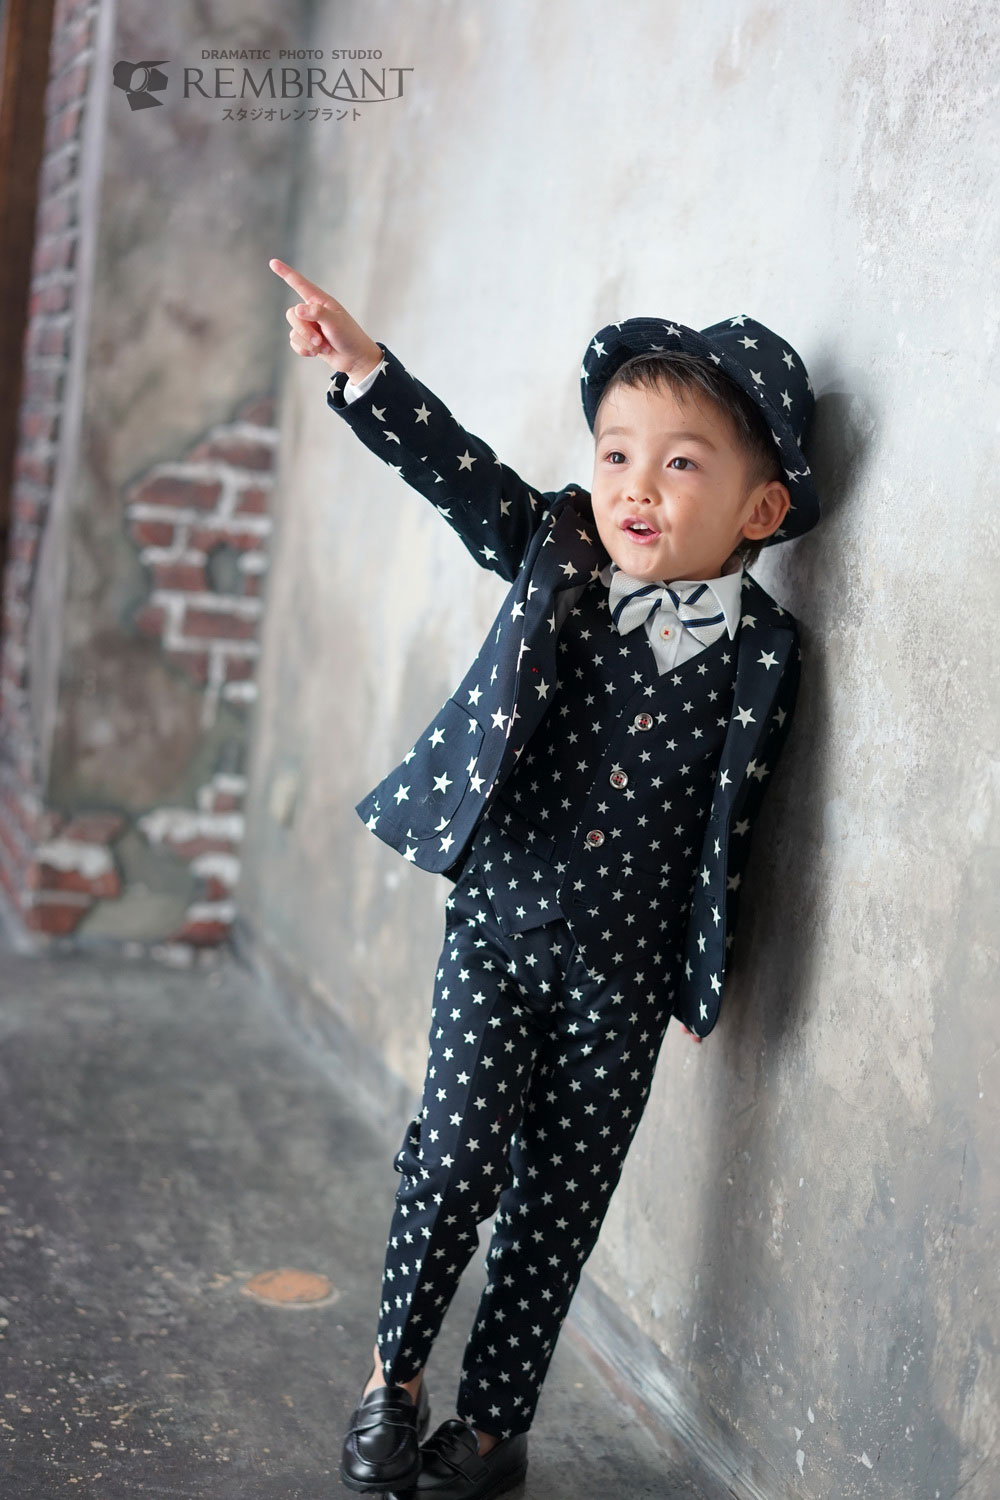 大人気の七五三衣装をご紹介 5才男の子洋装 京都のおしゃれな写真館 スタジオレンブラント